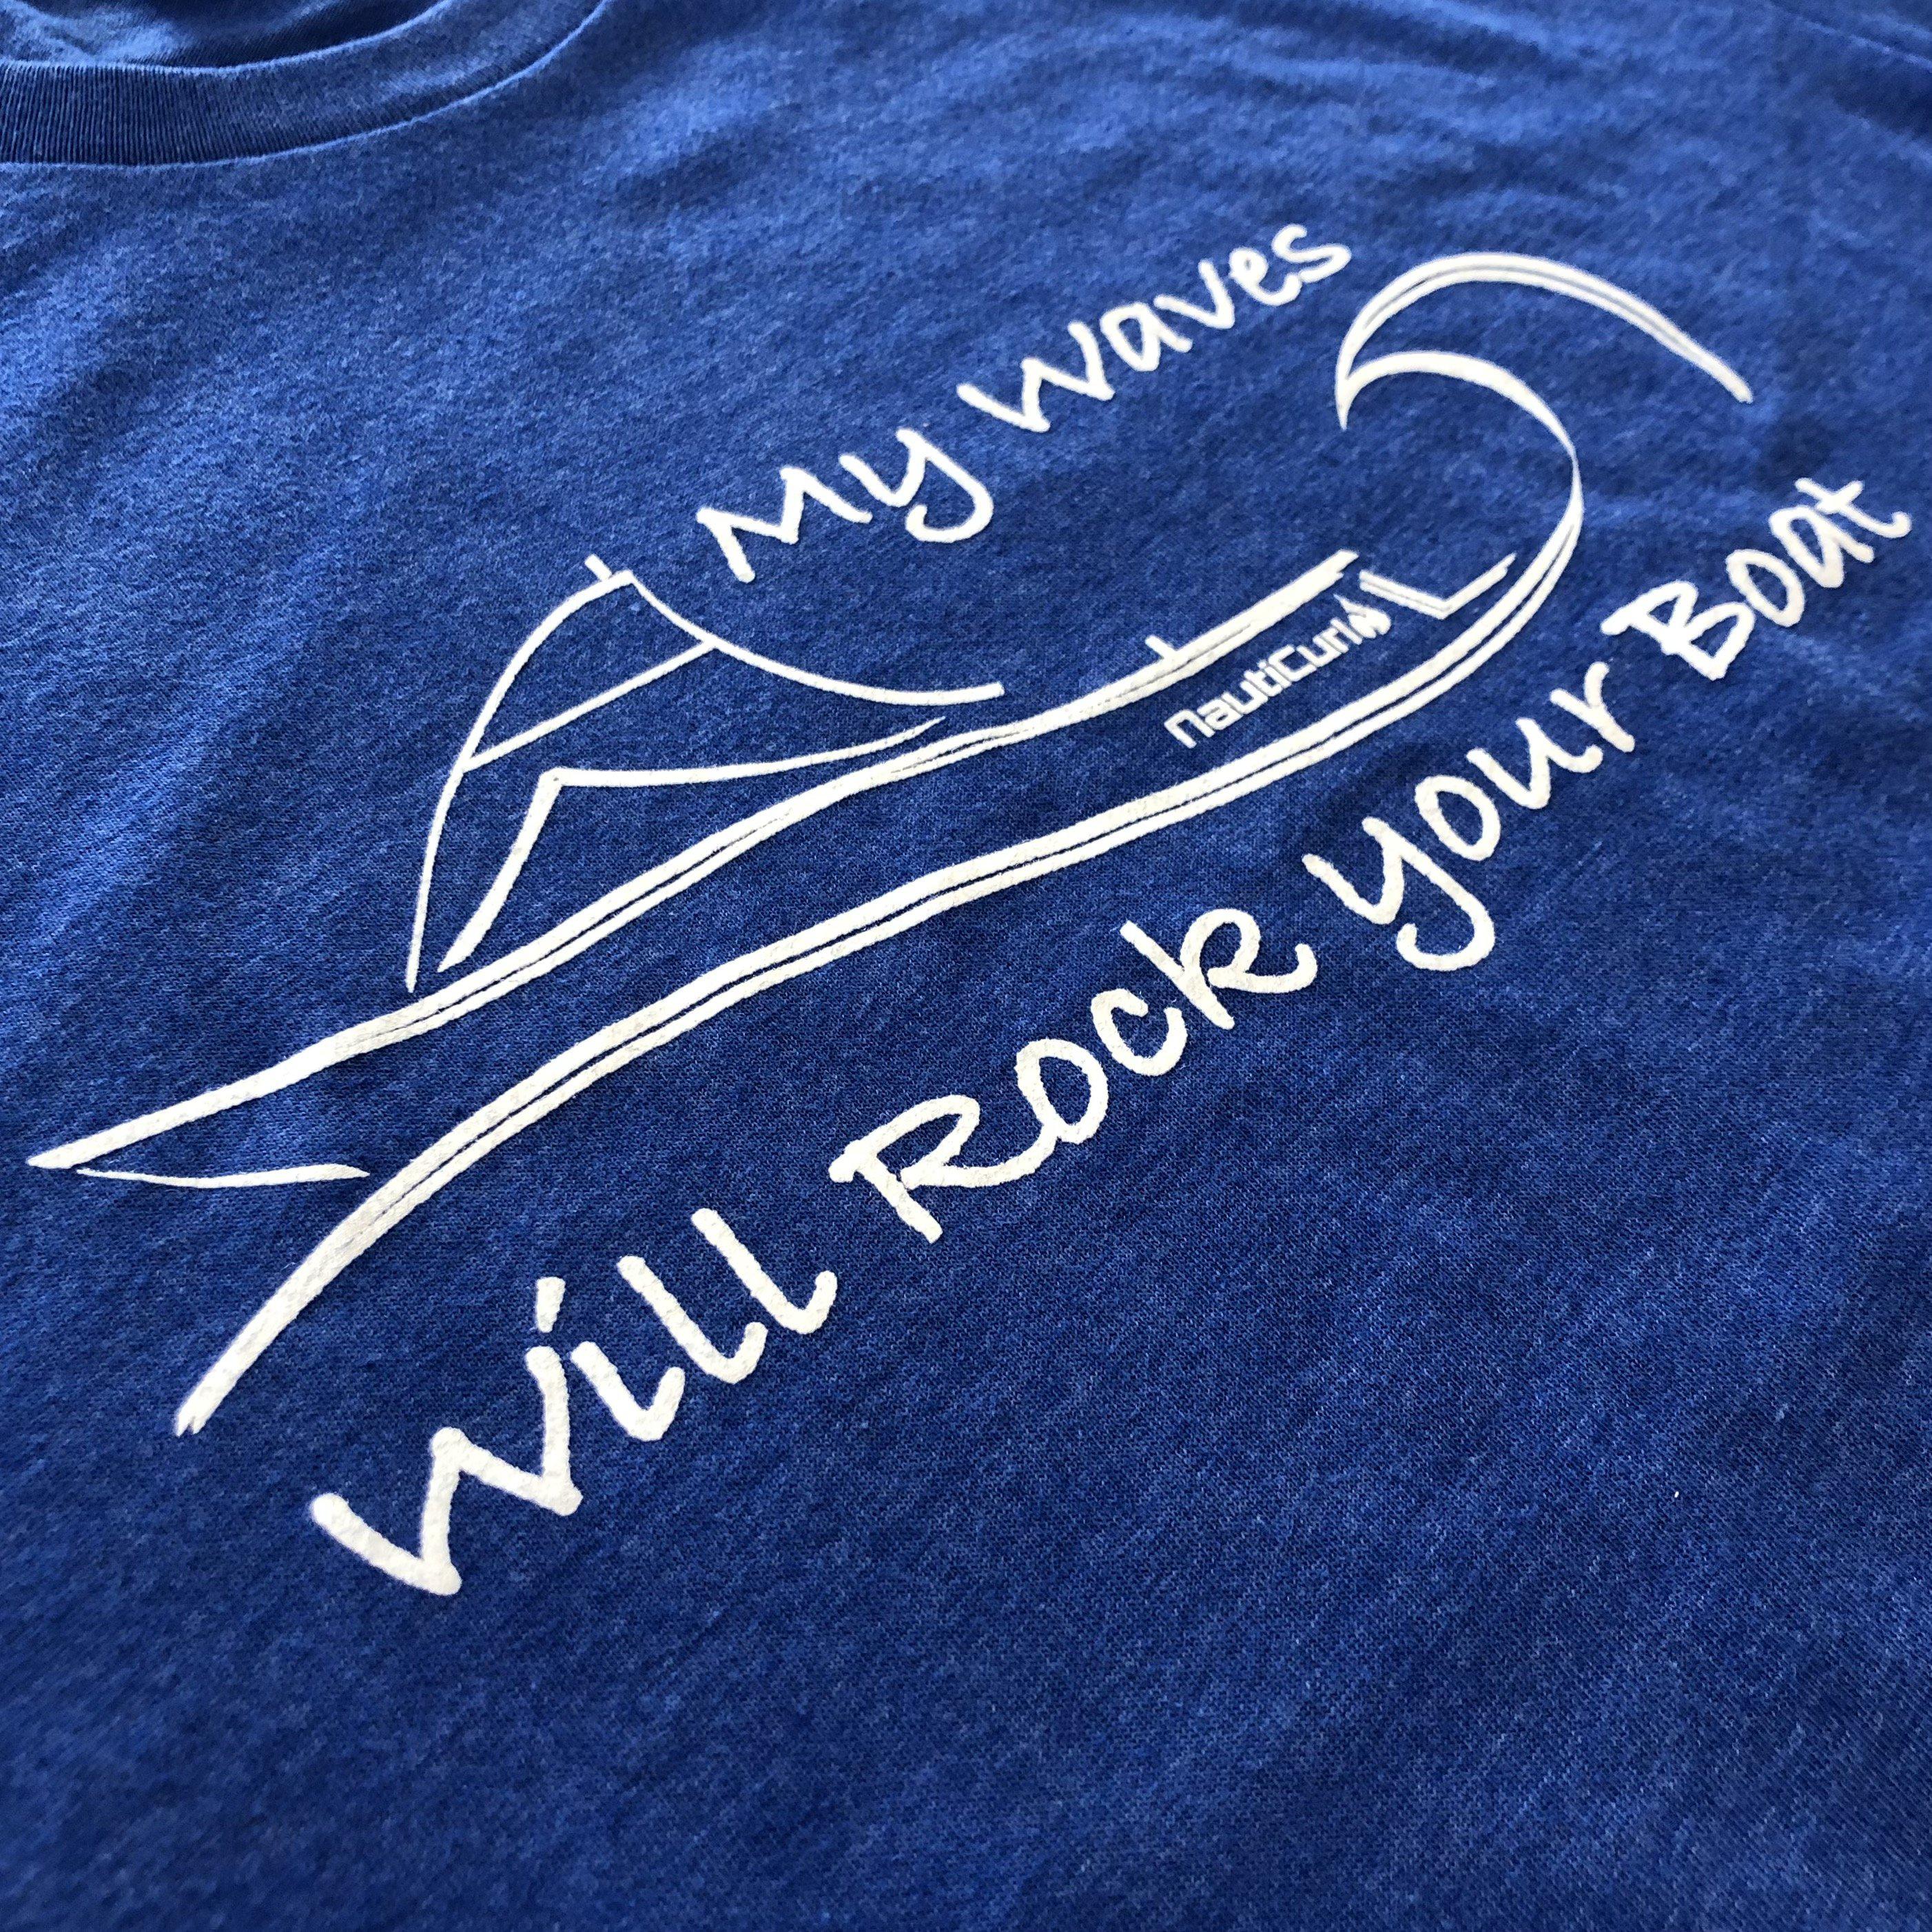 My Waves will Rock your Boat shirt - NautiCurl funny wakesurfing shirt teeshirt tshirt